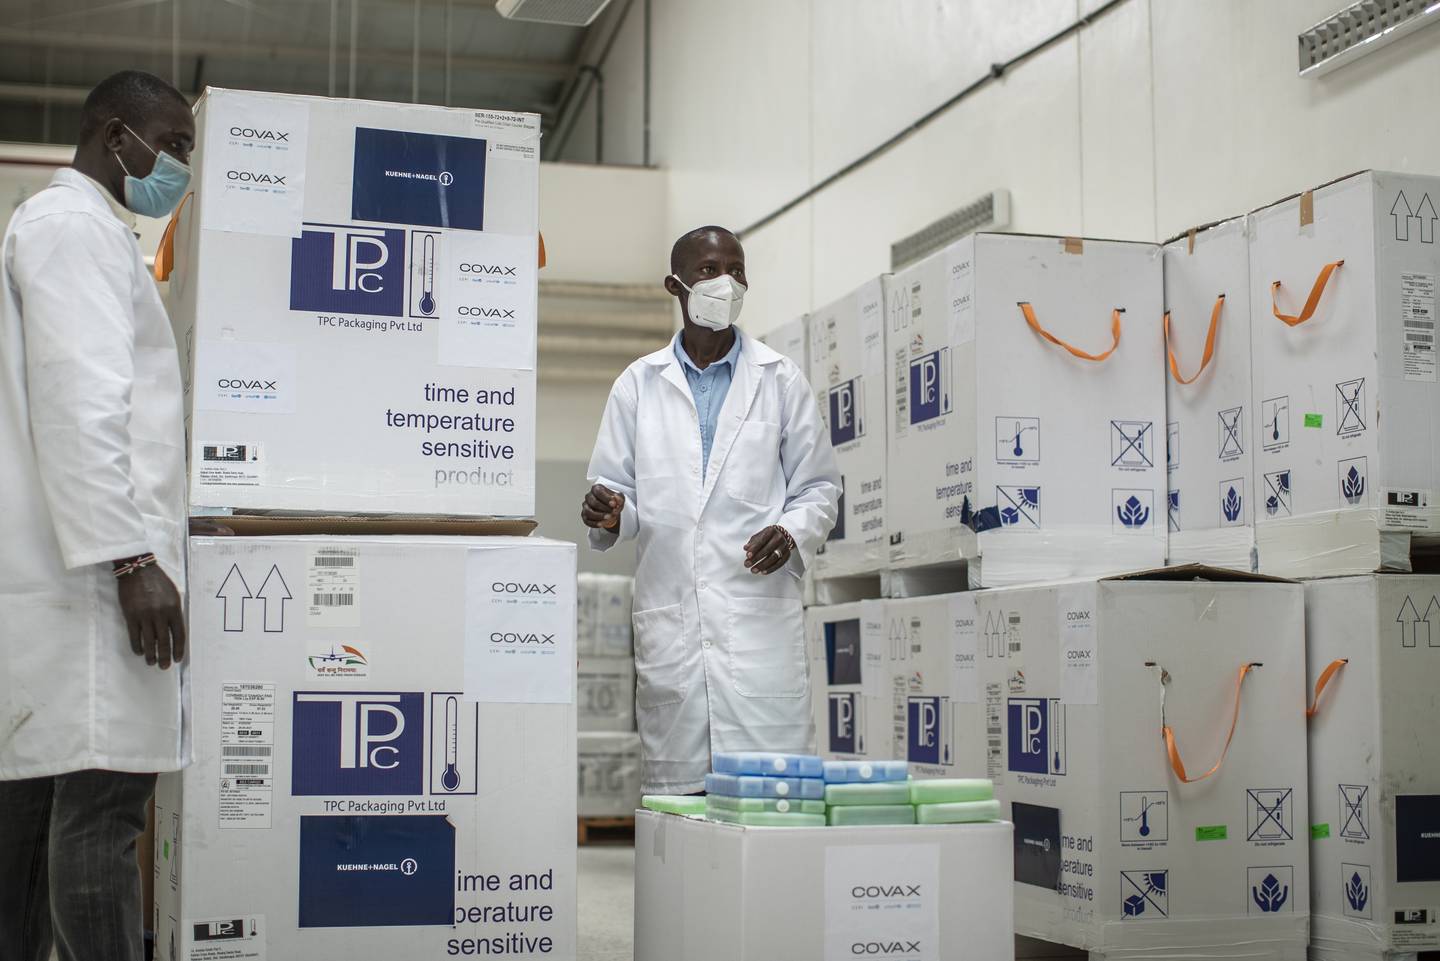 Teknikarar førebur utsending av vaksiner frå eit lager i Nairobi i Kenya. Vaksinene er betalt av Covax-samarbeidet.